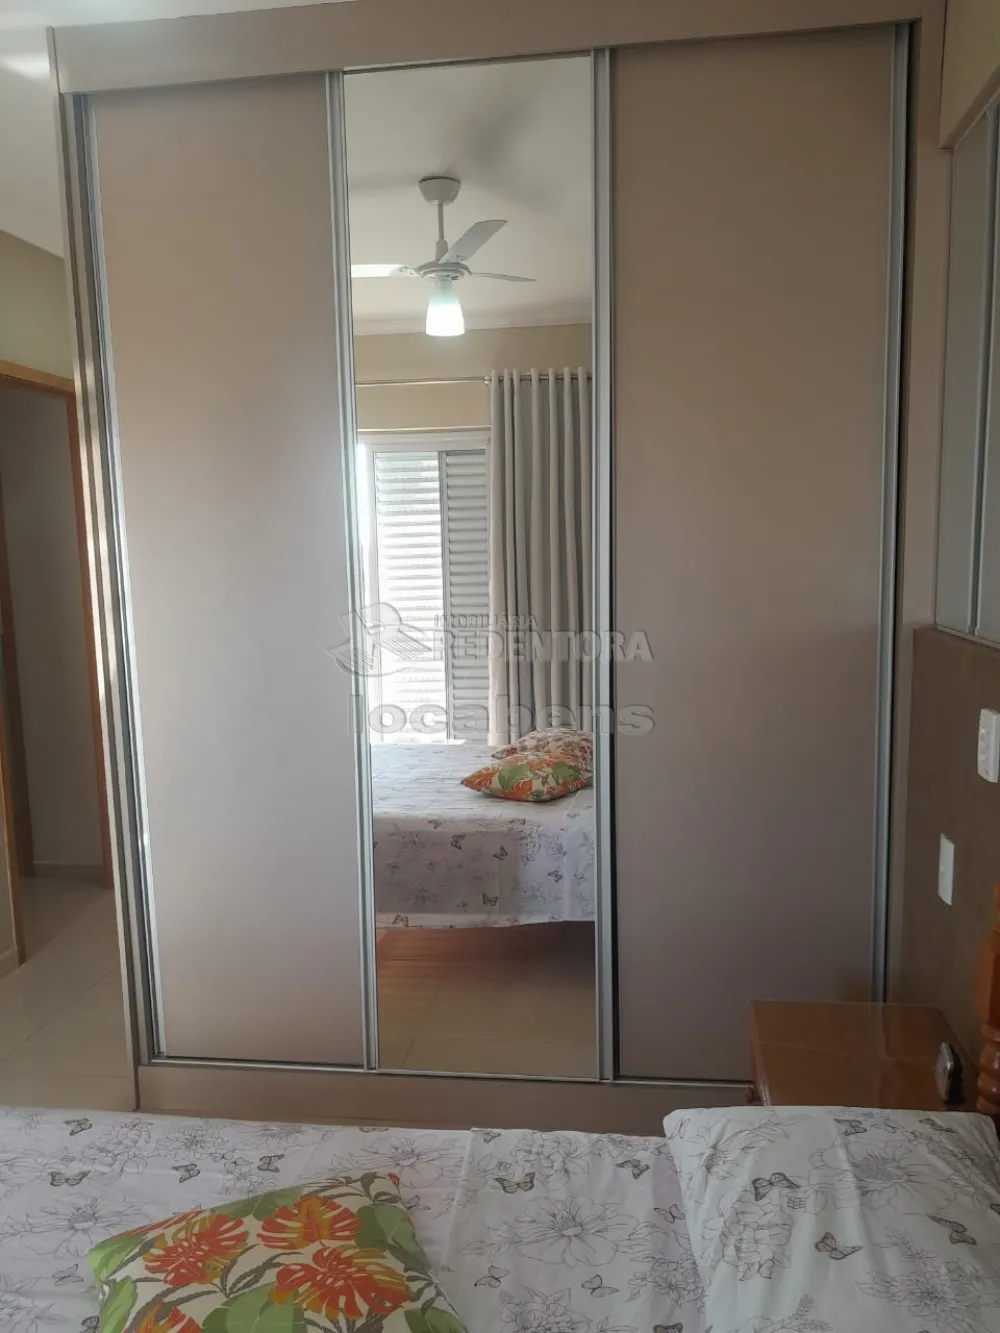 Comprar Apartamento / Padrão em São José do Rio Preto R$ 530.000,00 - Foto 15